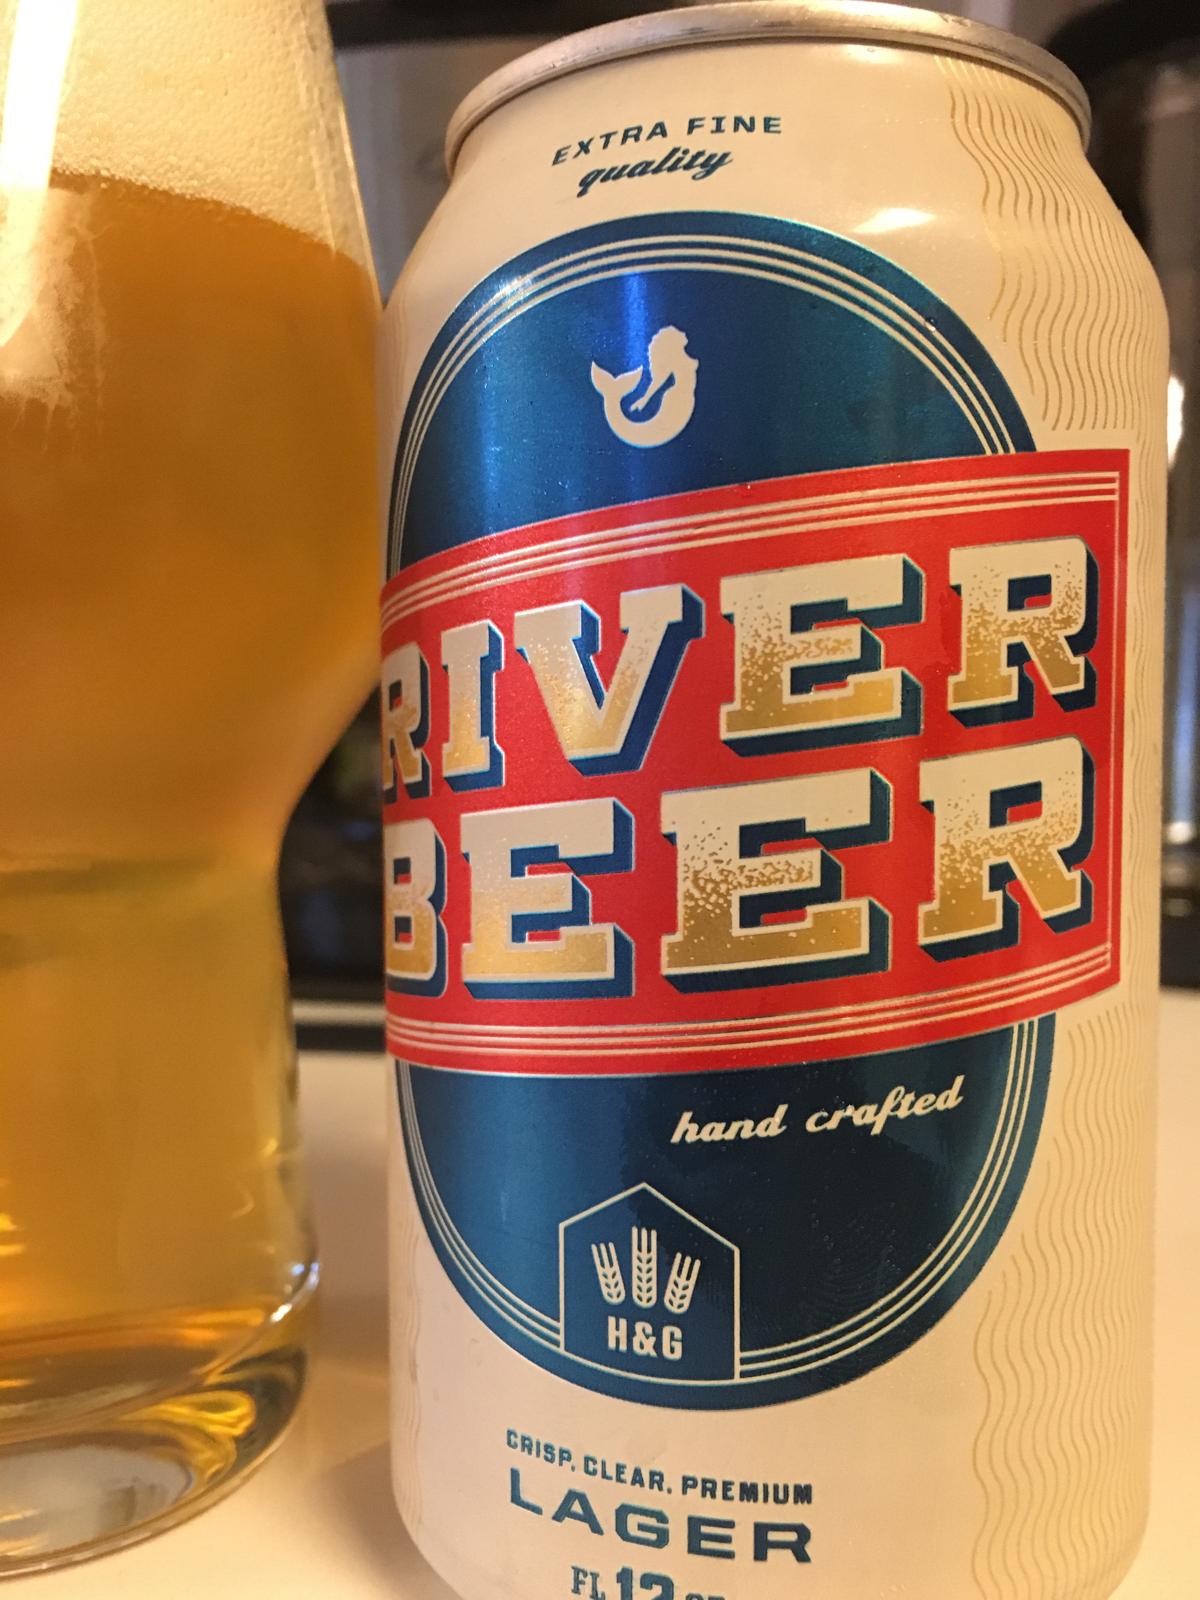 River Beer